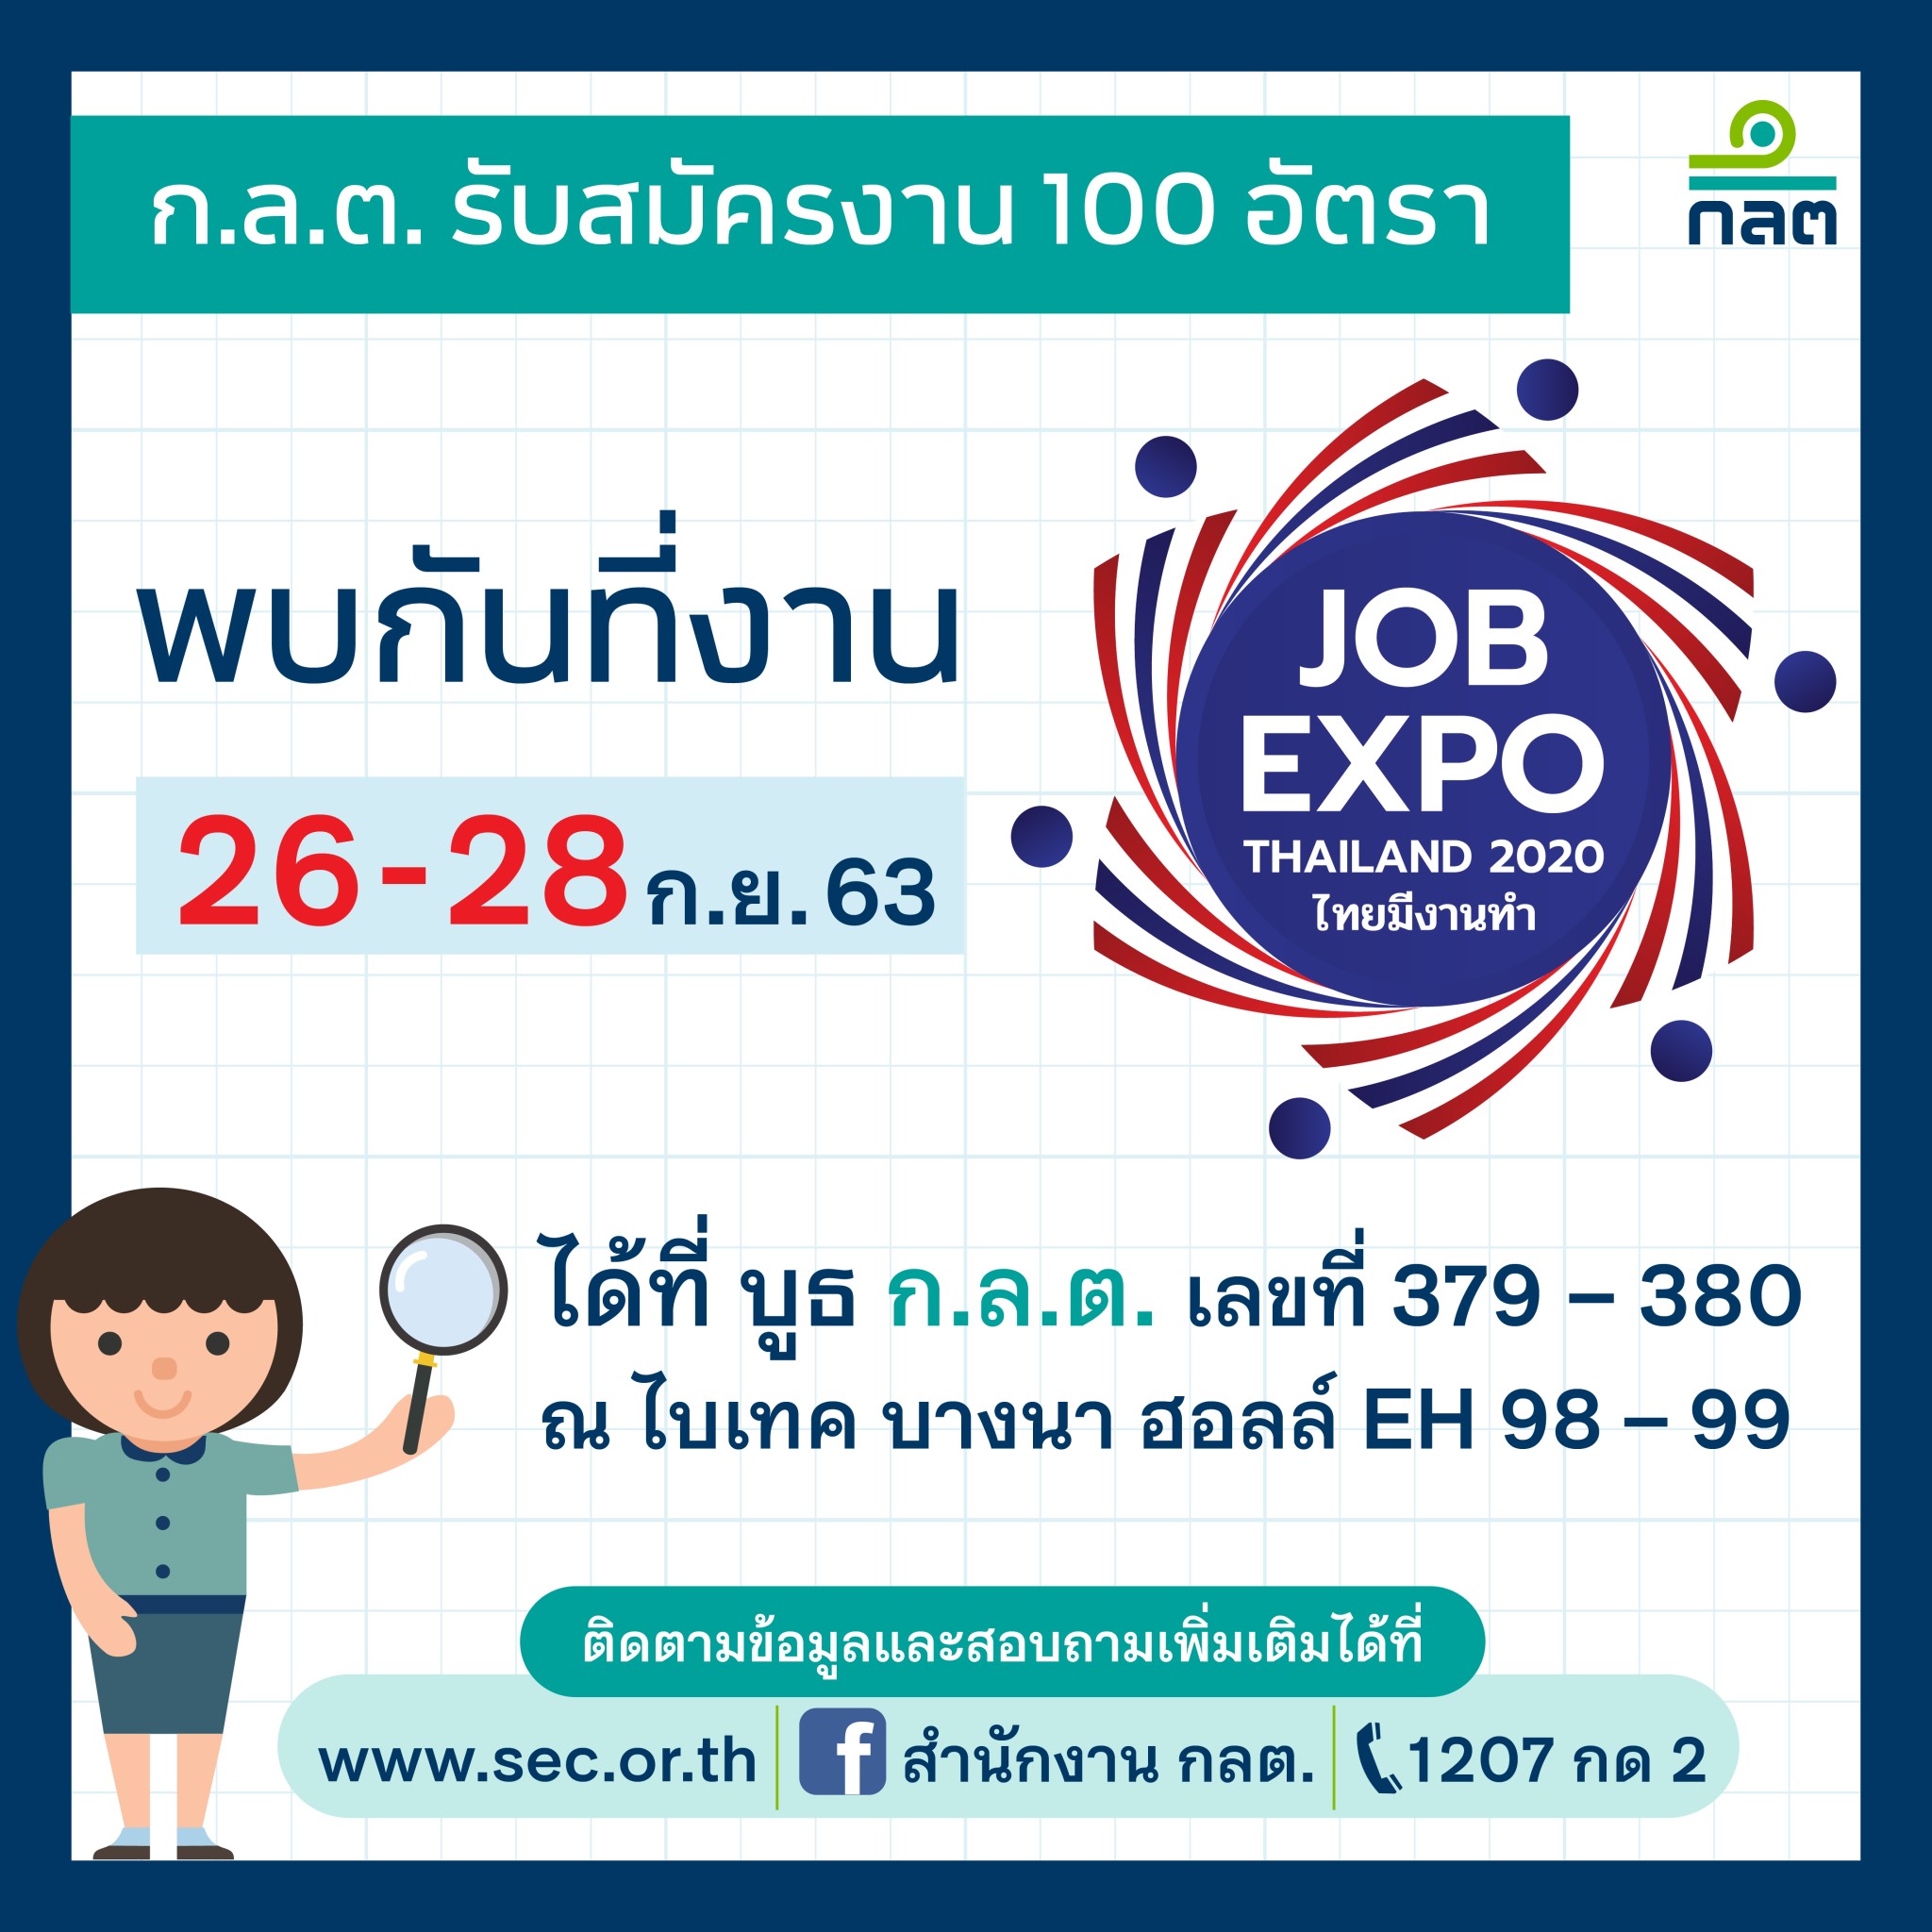 ก.ล.ต. ร่วมงาน Job Expo Thailand 2020 รับสมัครผู้จบการศึกษาใหม่ 100 ตำแหน่ง